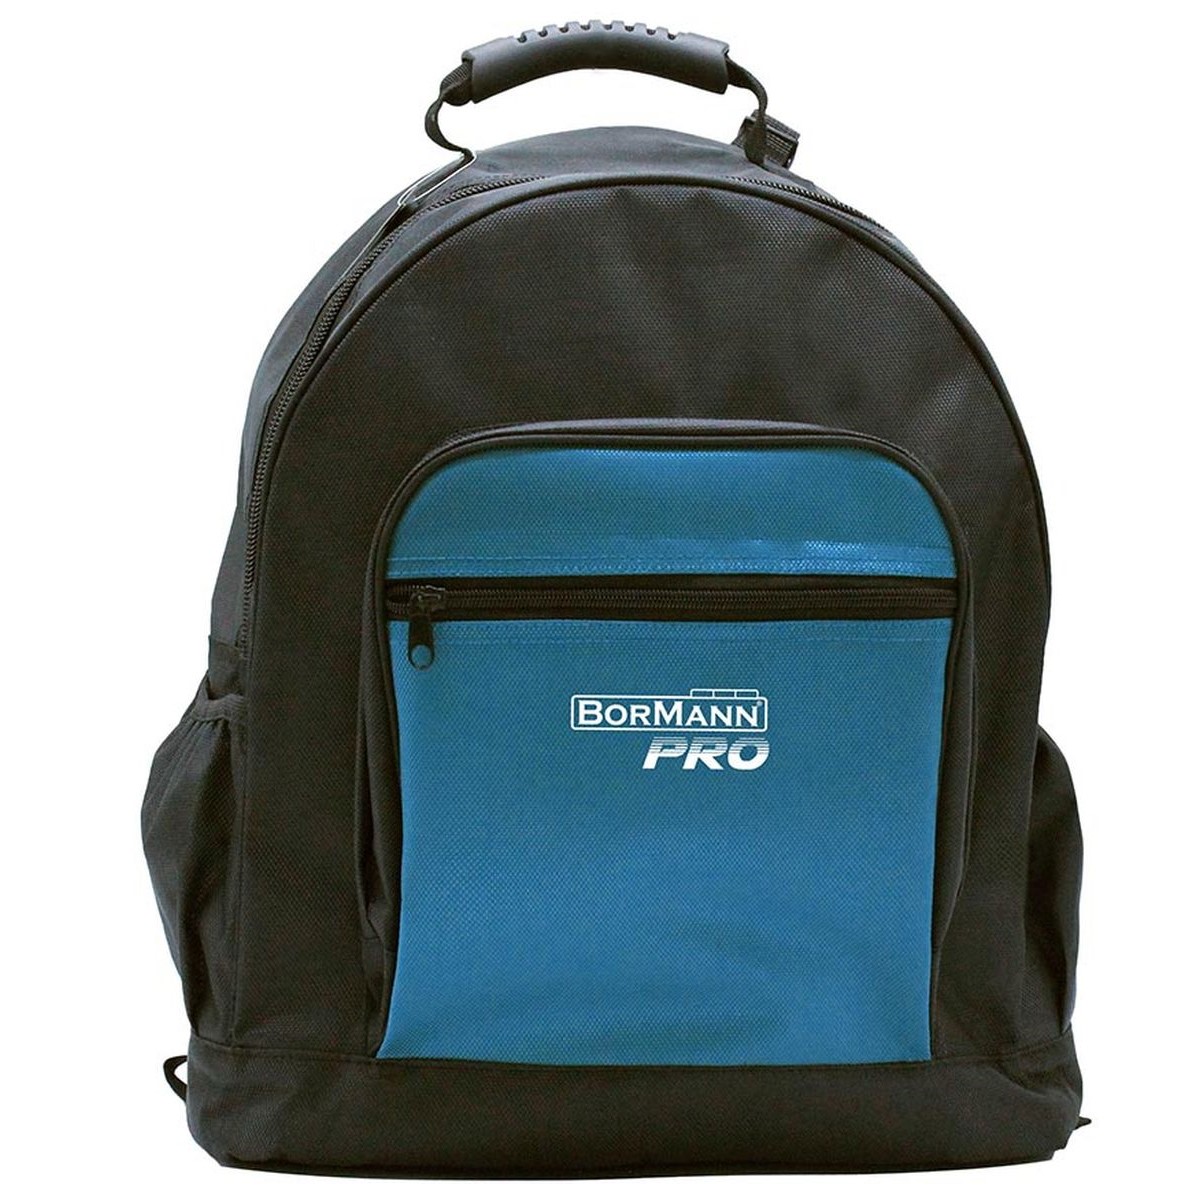 Τσάντα Εργαλειών 46x36x21cm BTB3150 029007 Bormann της σειράς Pro.